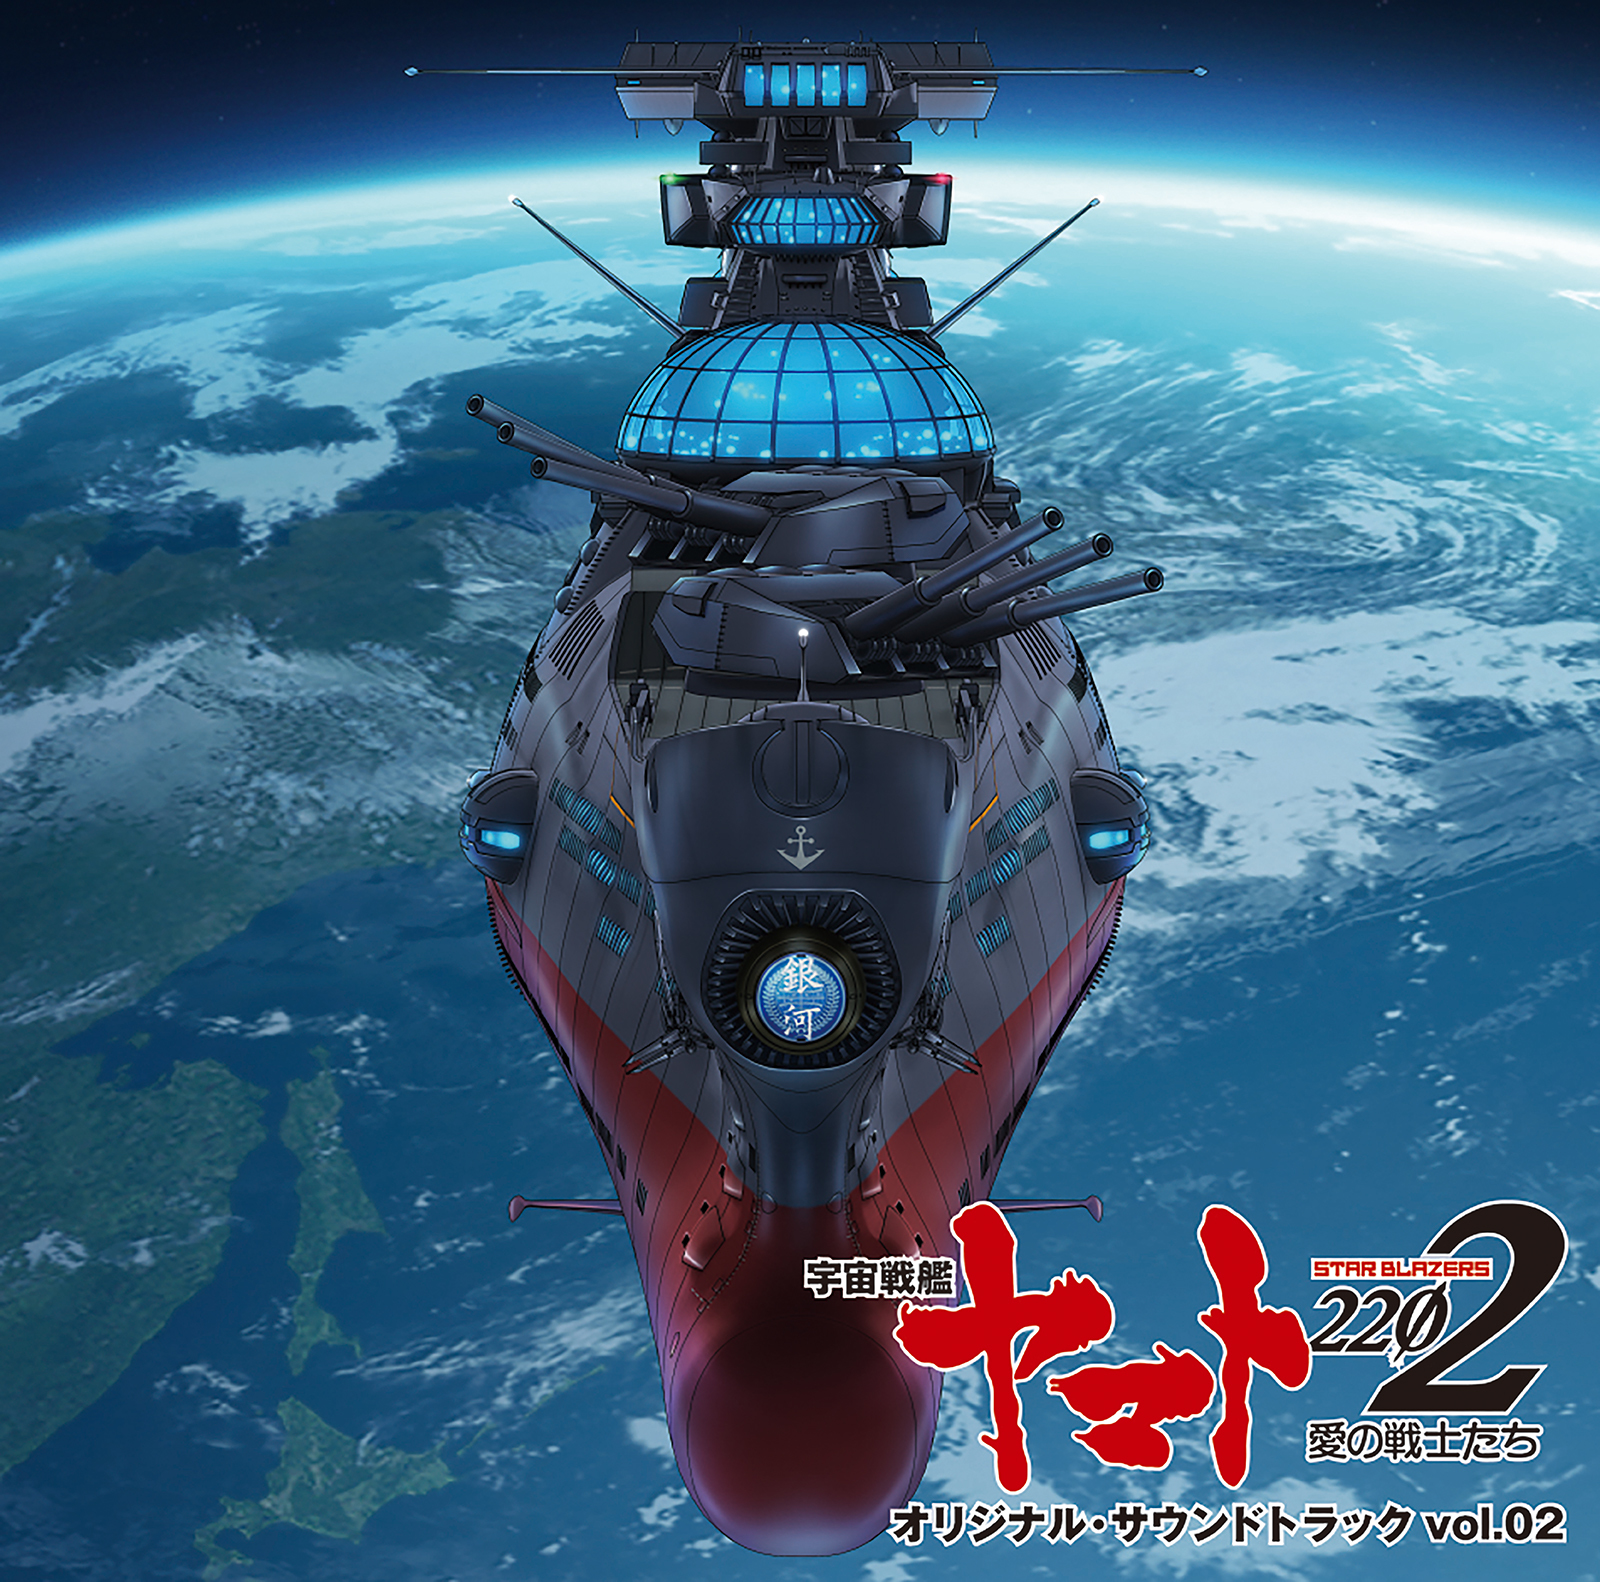 Space Battleship Yamato 2202 Vol. 2 Soundtrack (by Akira Miyagawa) -- Seeders: 3 -- Leechers: 0